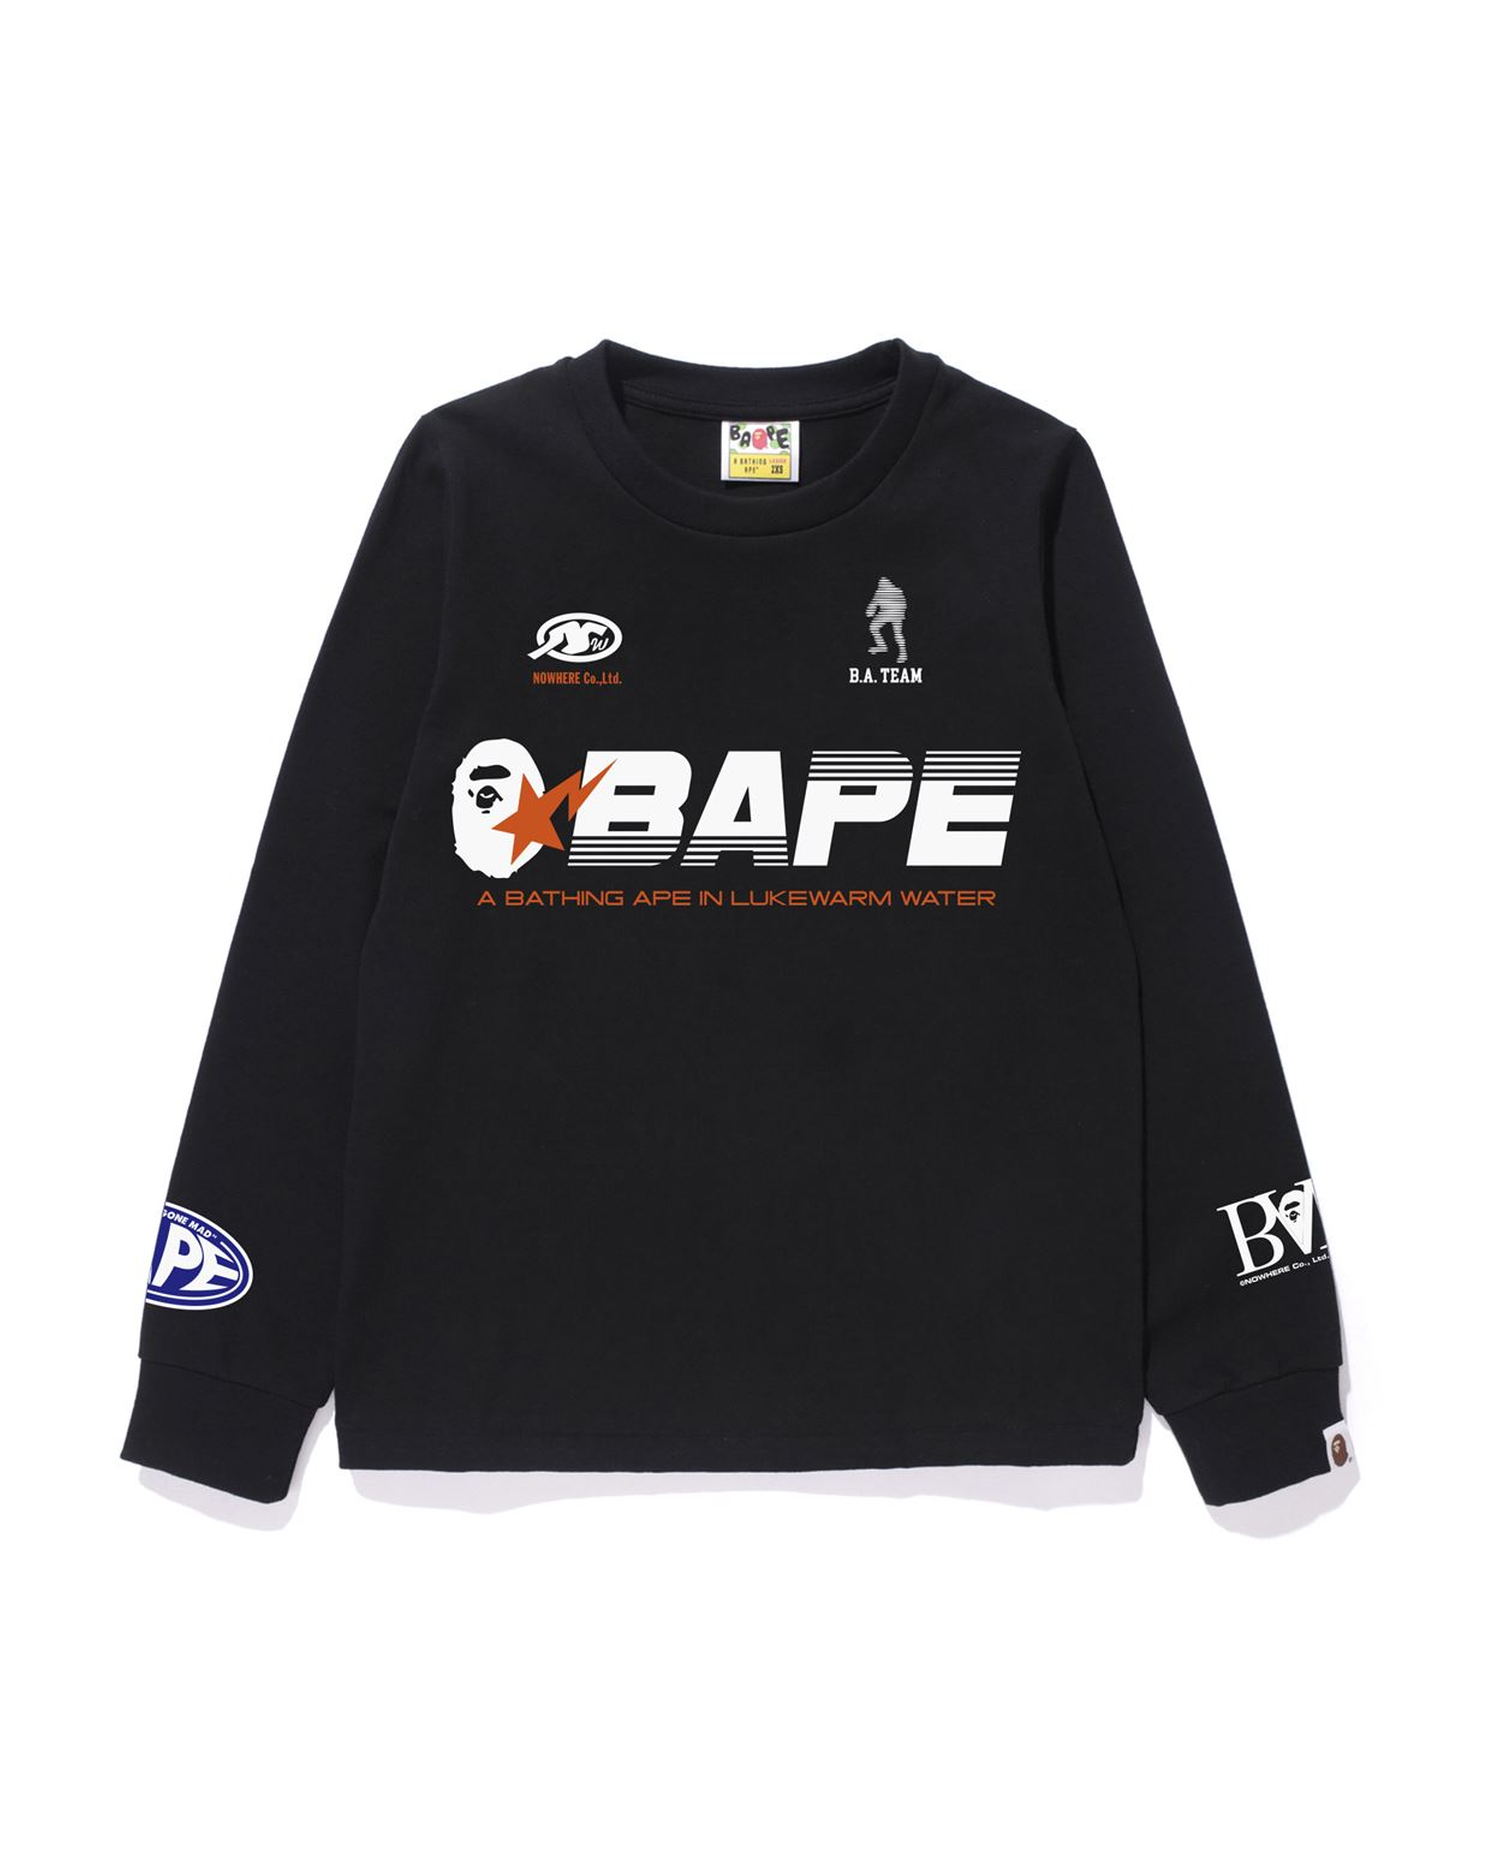 Shop BAPE Racing L/S Tee Online | BAPE